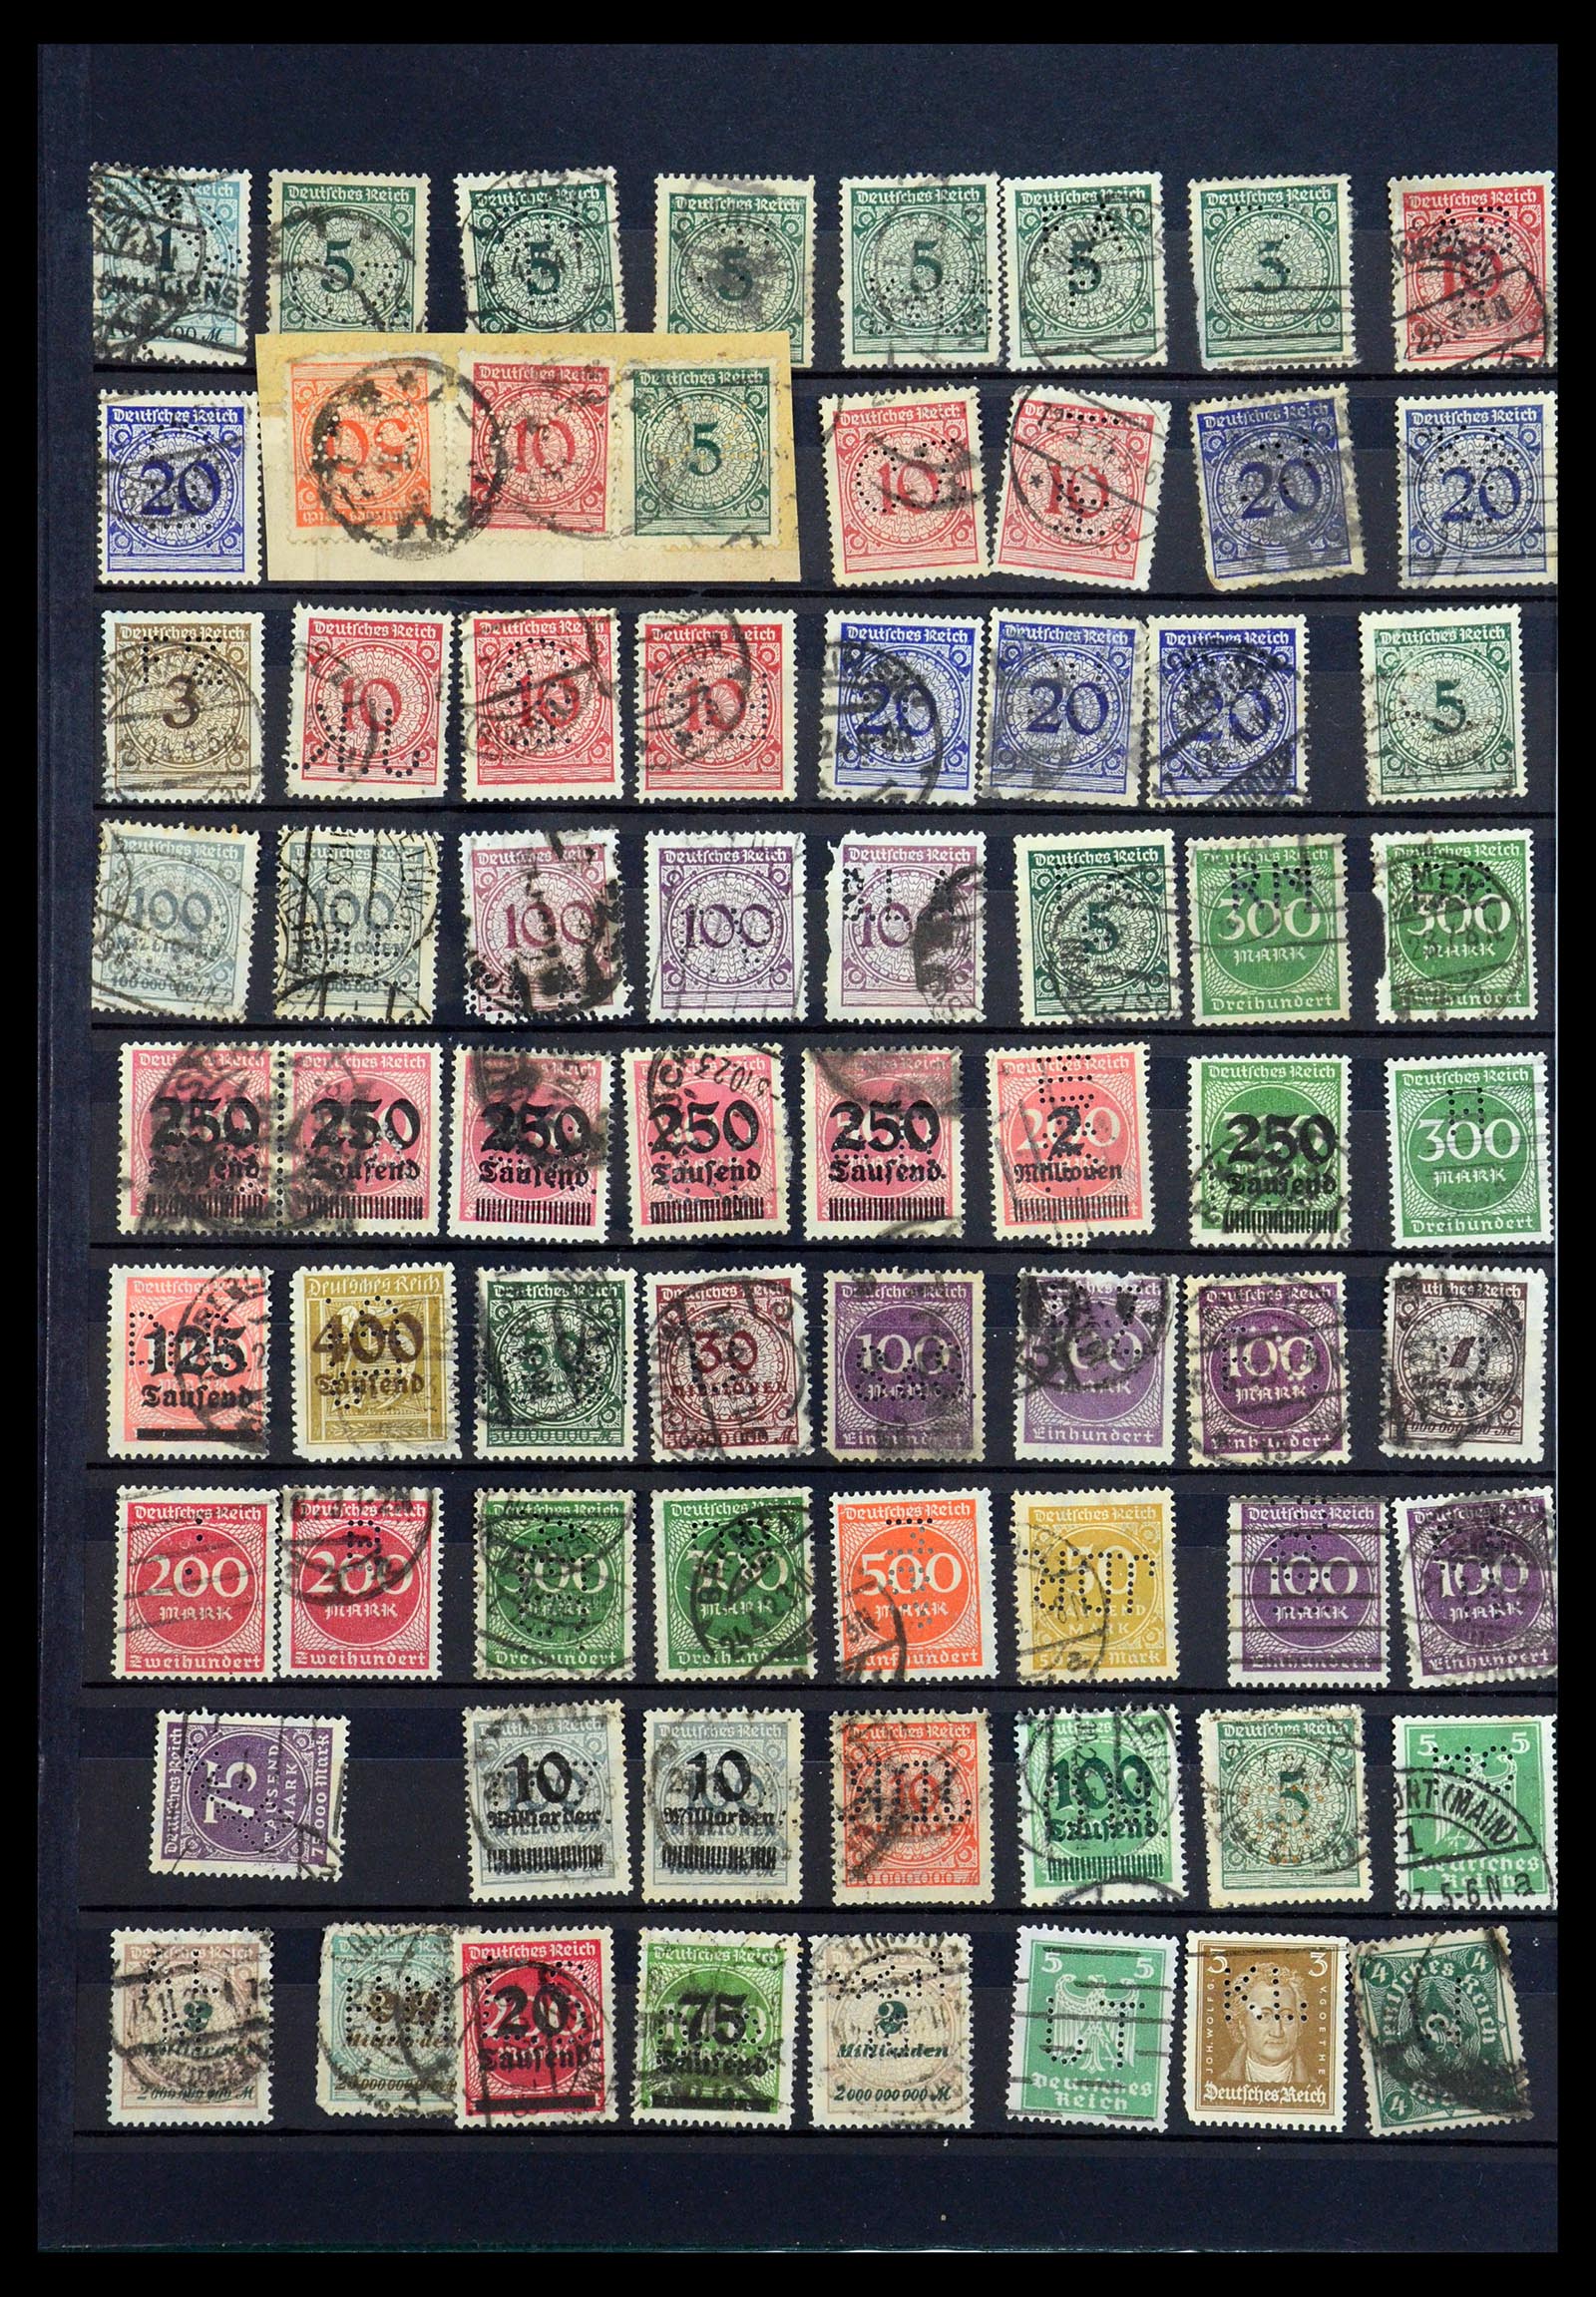 35183 022 - Stamp Collection 35183 German Reich perfins 1880-1945.